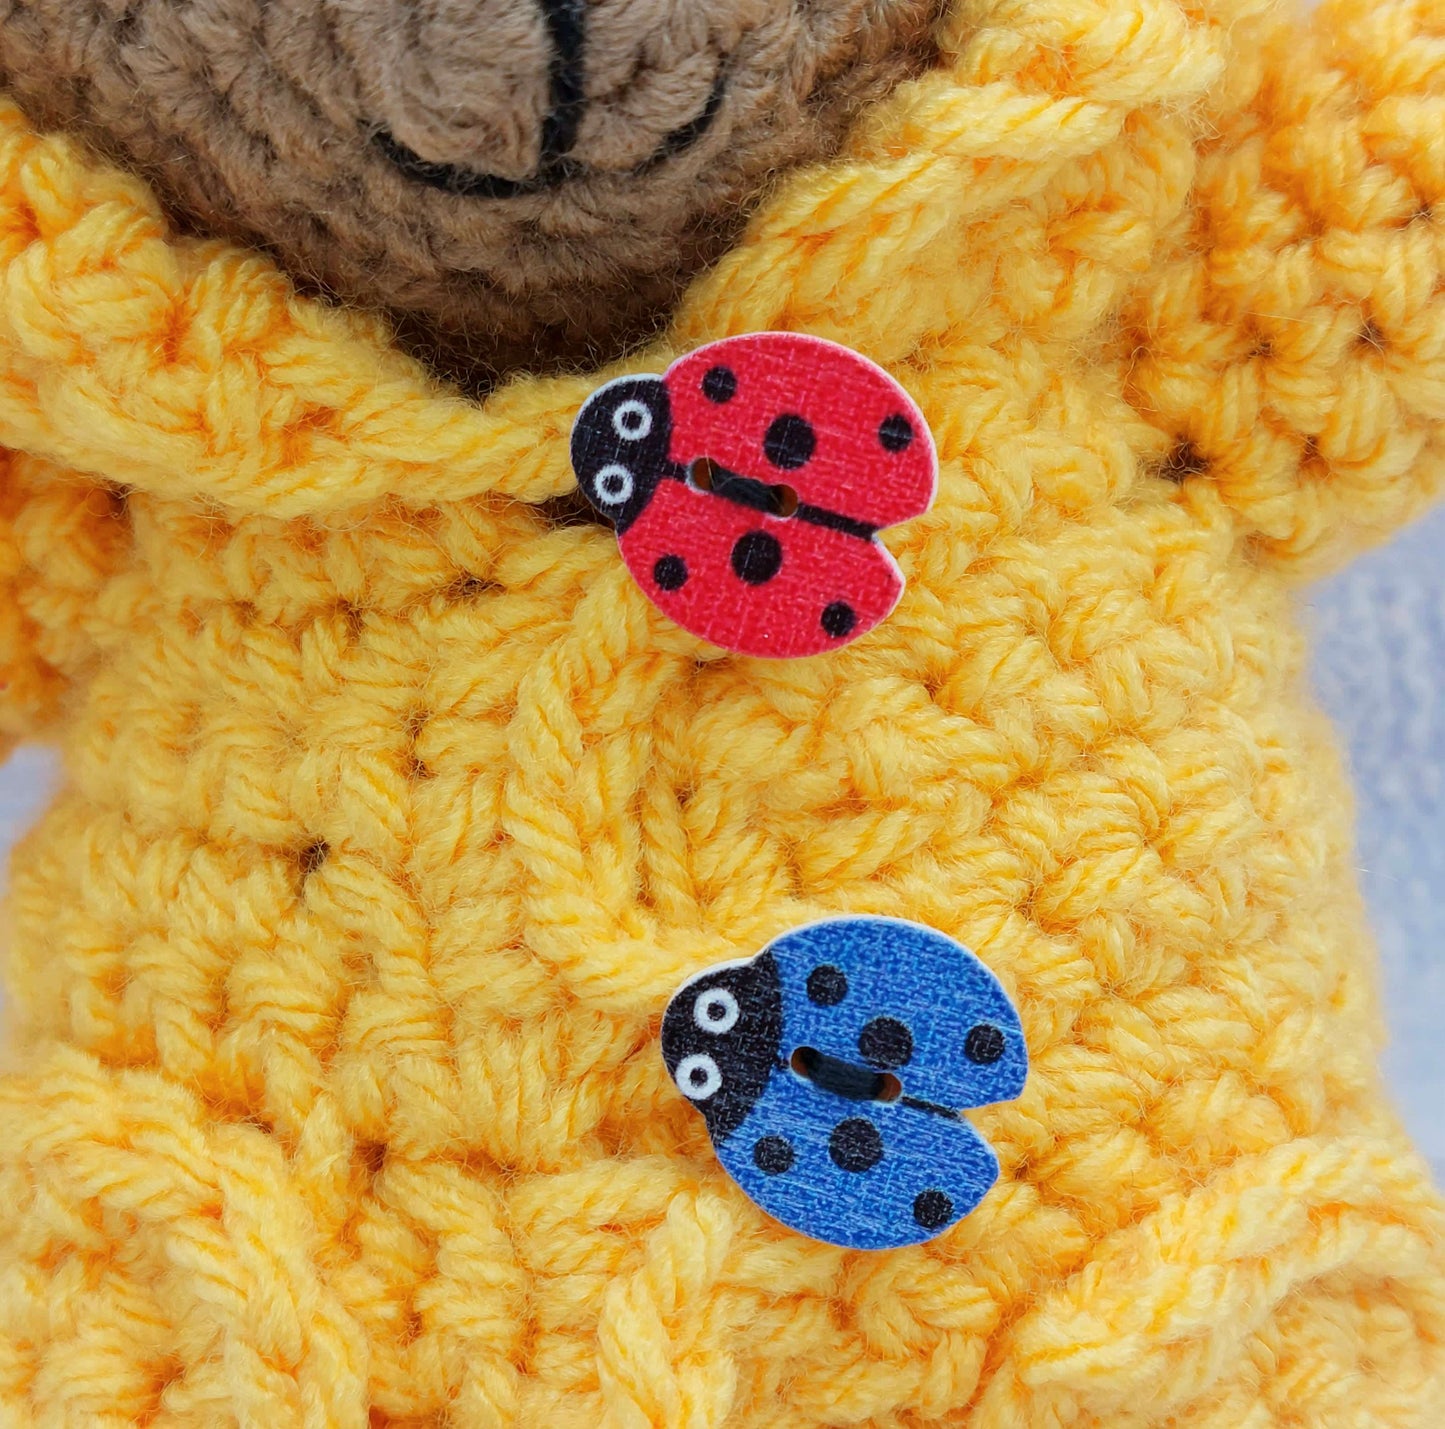 Baby Waffles the Bear - PDF Crochet Pattern